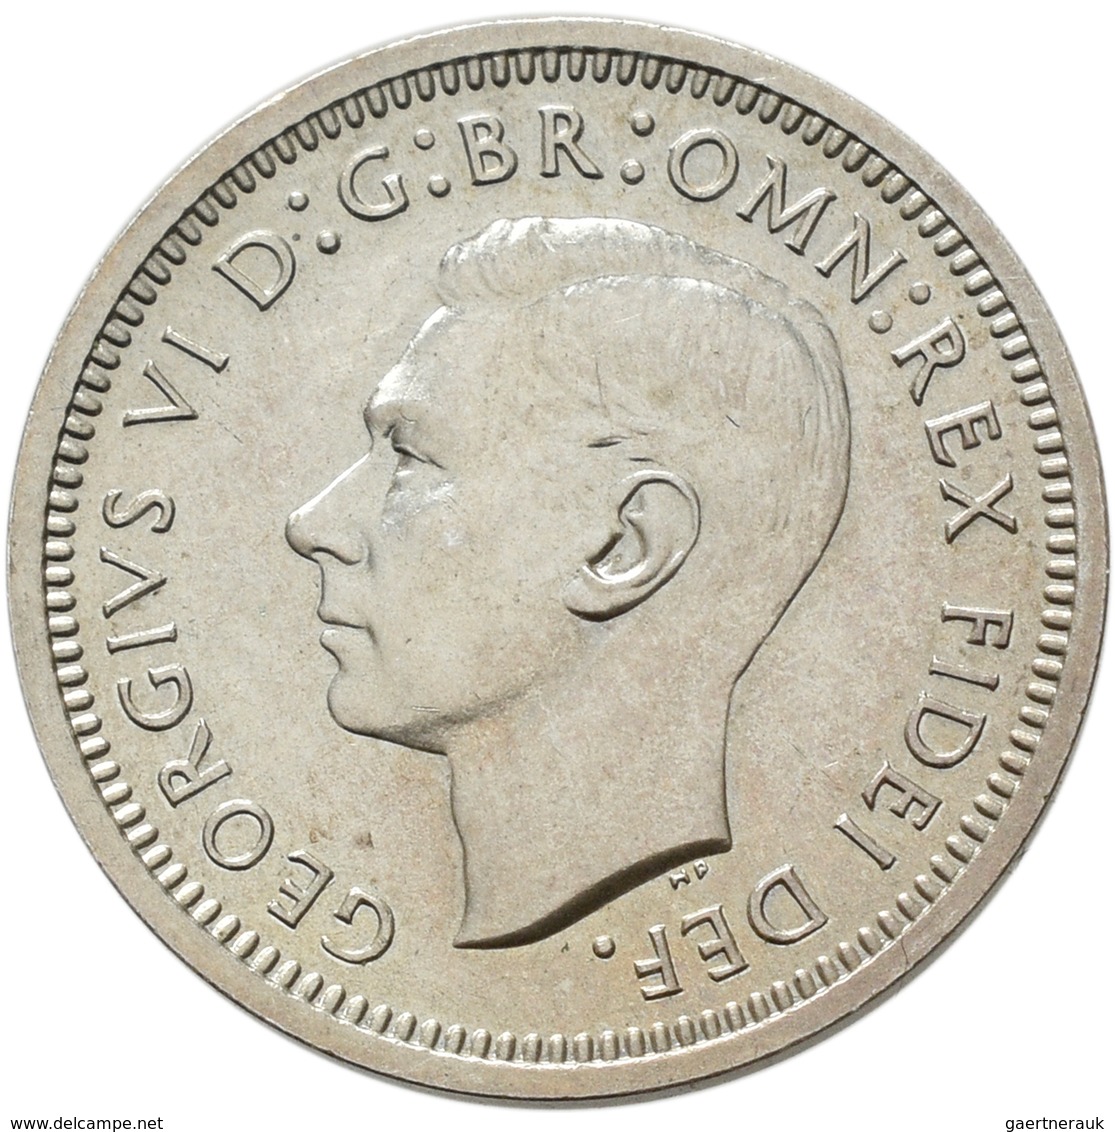 Großbritannien: Georg VI. 1936-1952: 3 x Maundy Set 1,2,3,4 Pence 1943, 1948, 1950, vorzüglich, vorz